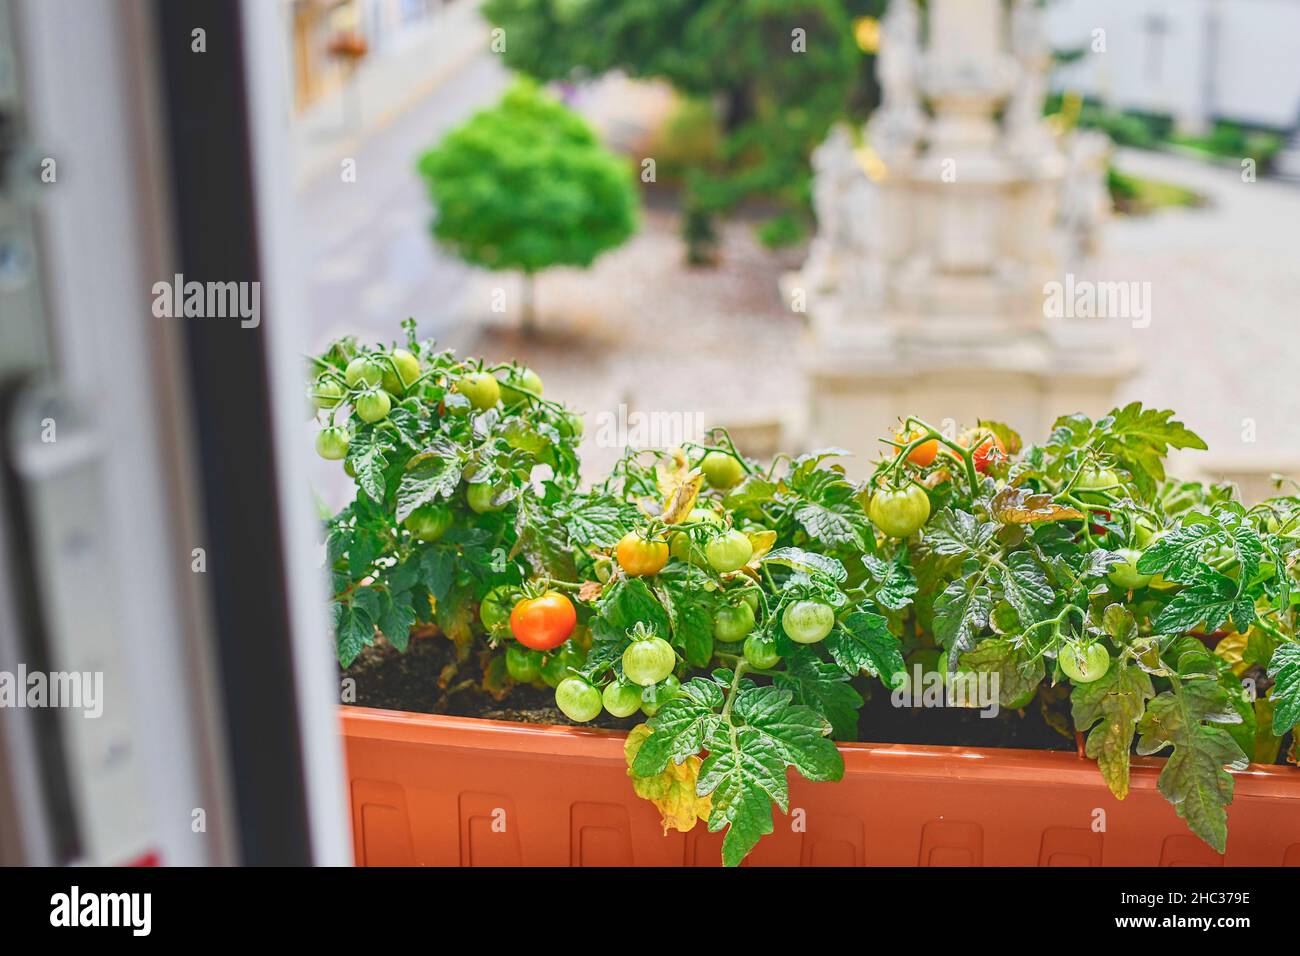 Vue sur les tomates naines sur le rebord de la fenêtre.Gros plan.Concept urbain de jardinage Banque D'Images